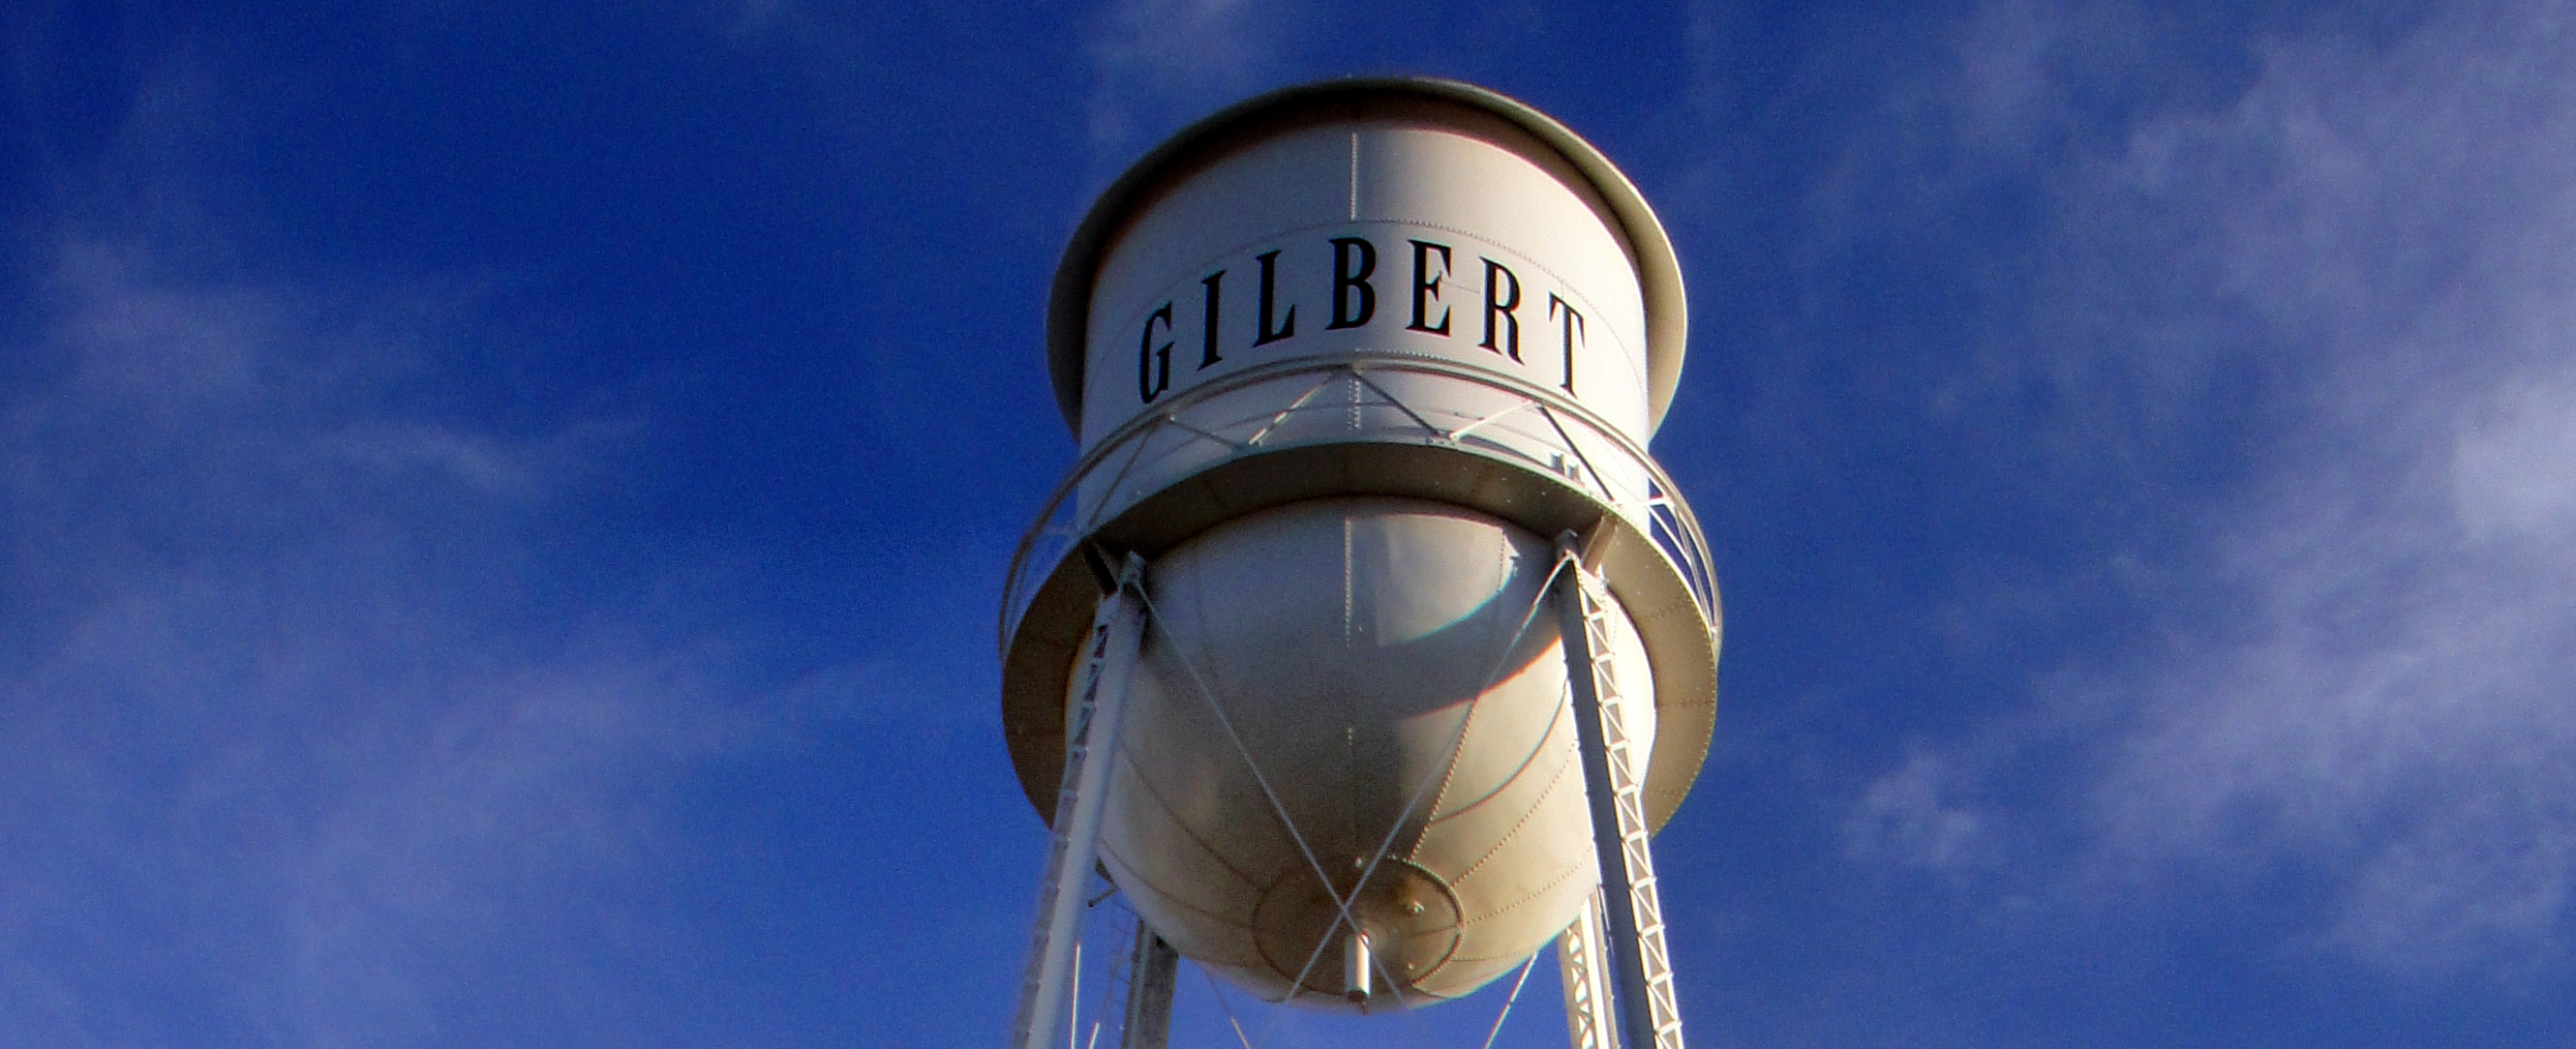 Gilbert, Arizona